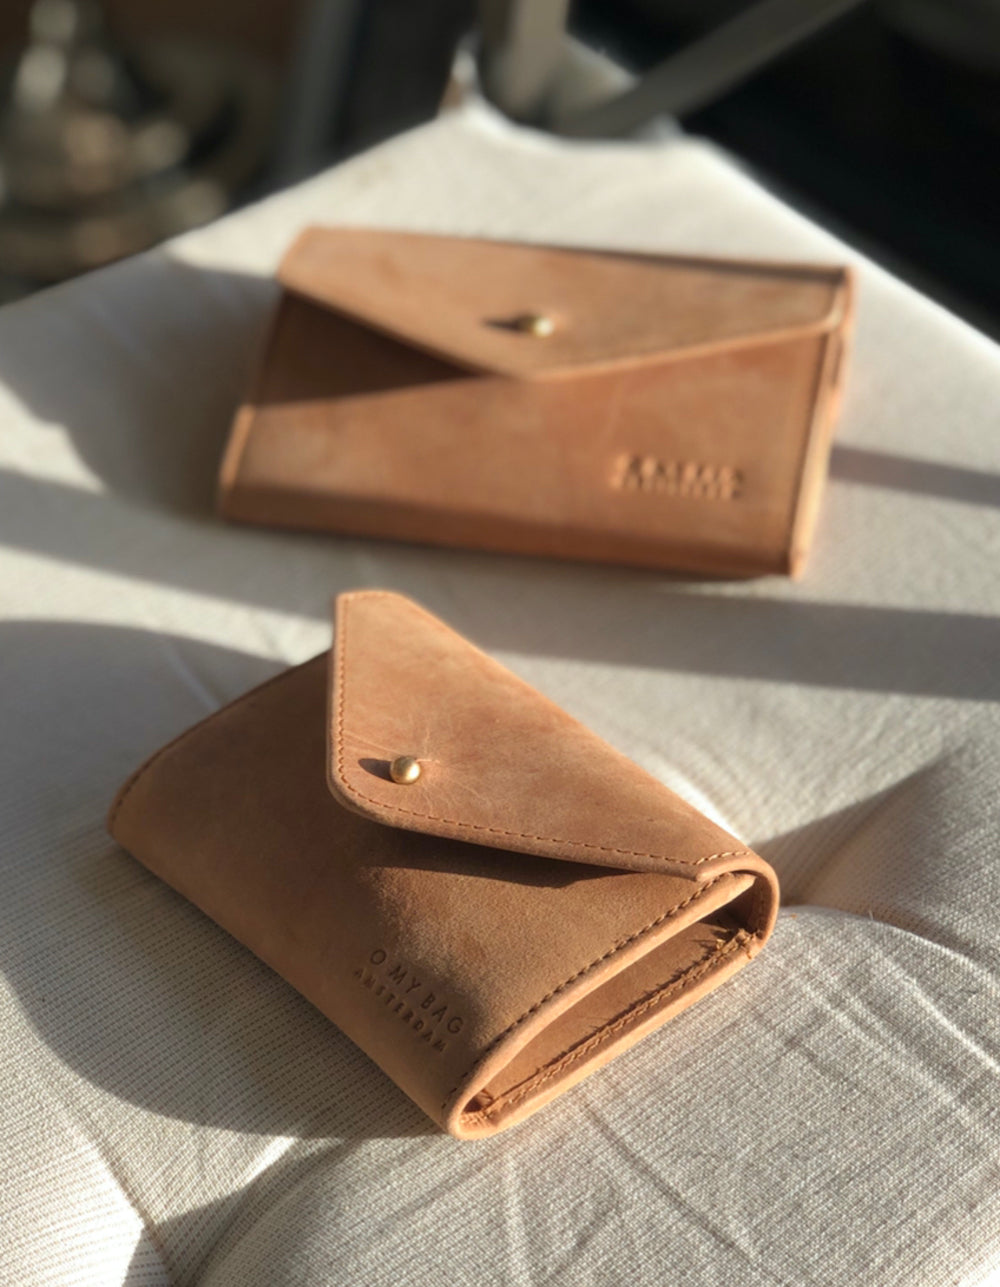 Camel Leather wallet. Envelope shape. Lifestyle product image.